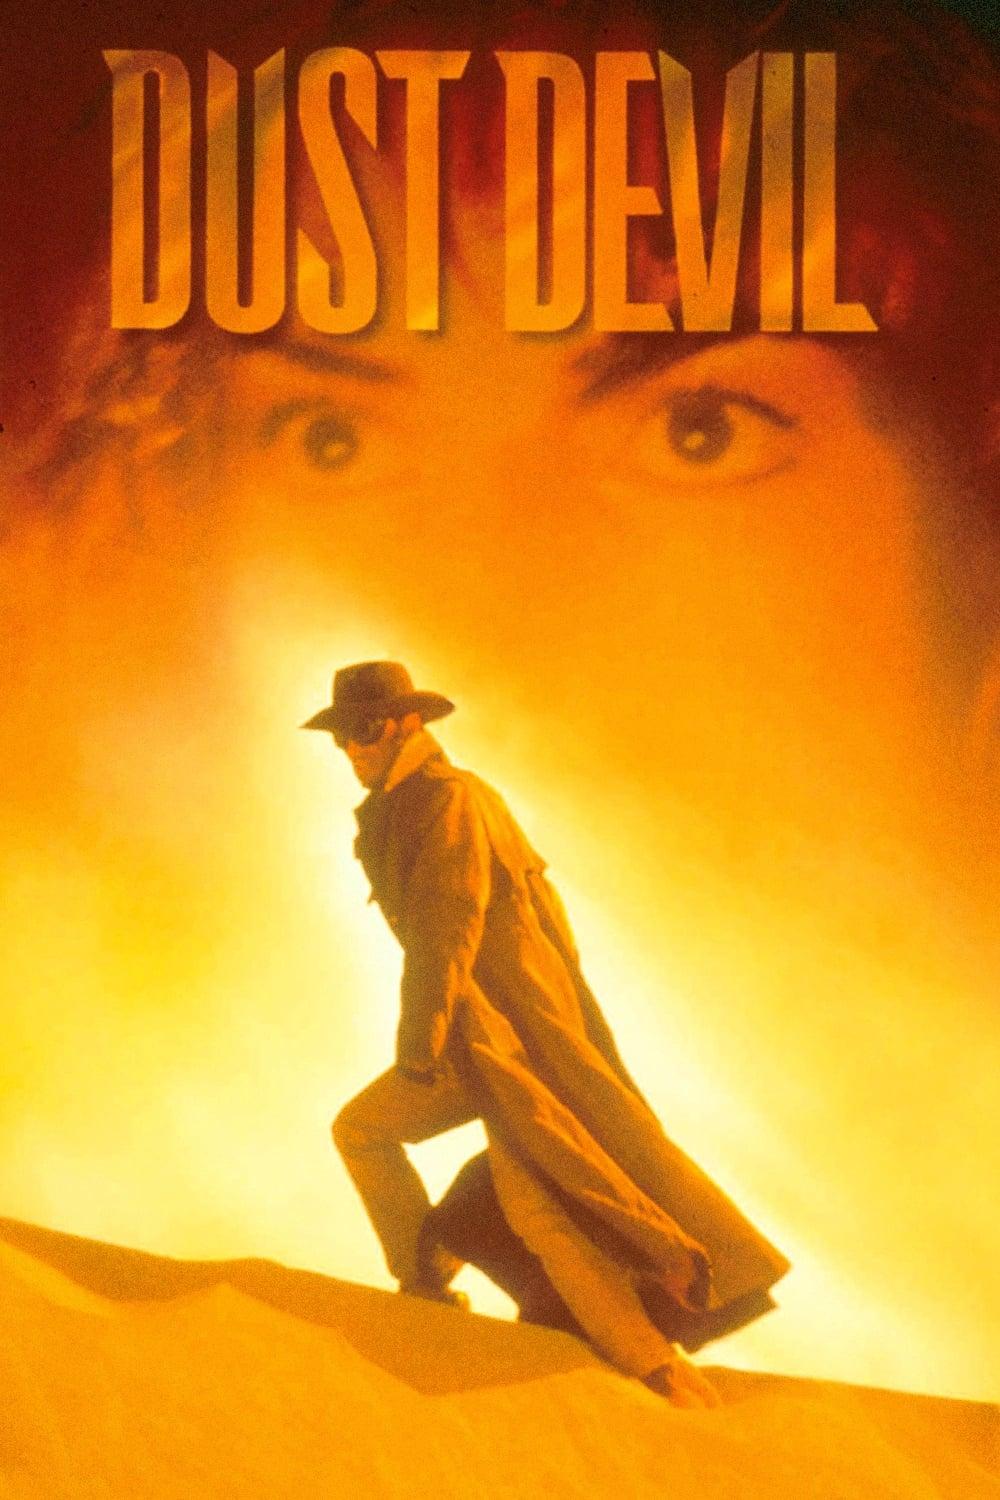 Dust Devil poster